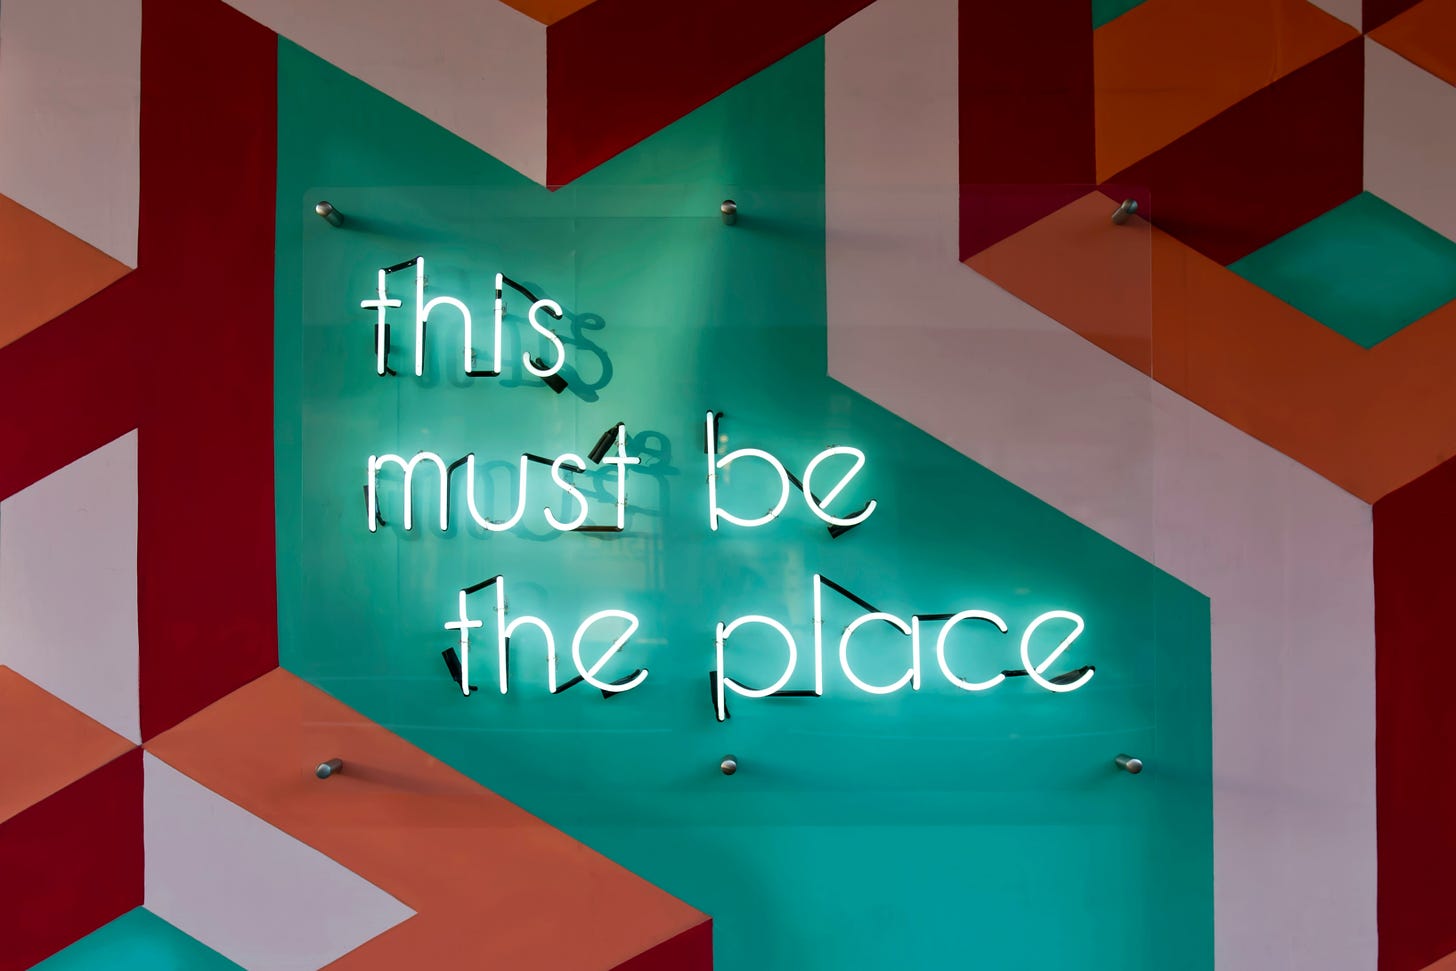 Una parete decorata con geometrie bianche, rosse, verdi e arancioni. Al centro un'insegna al neon dice "this must be the place".